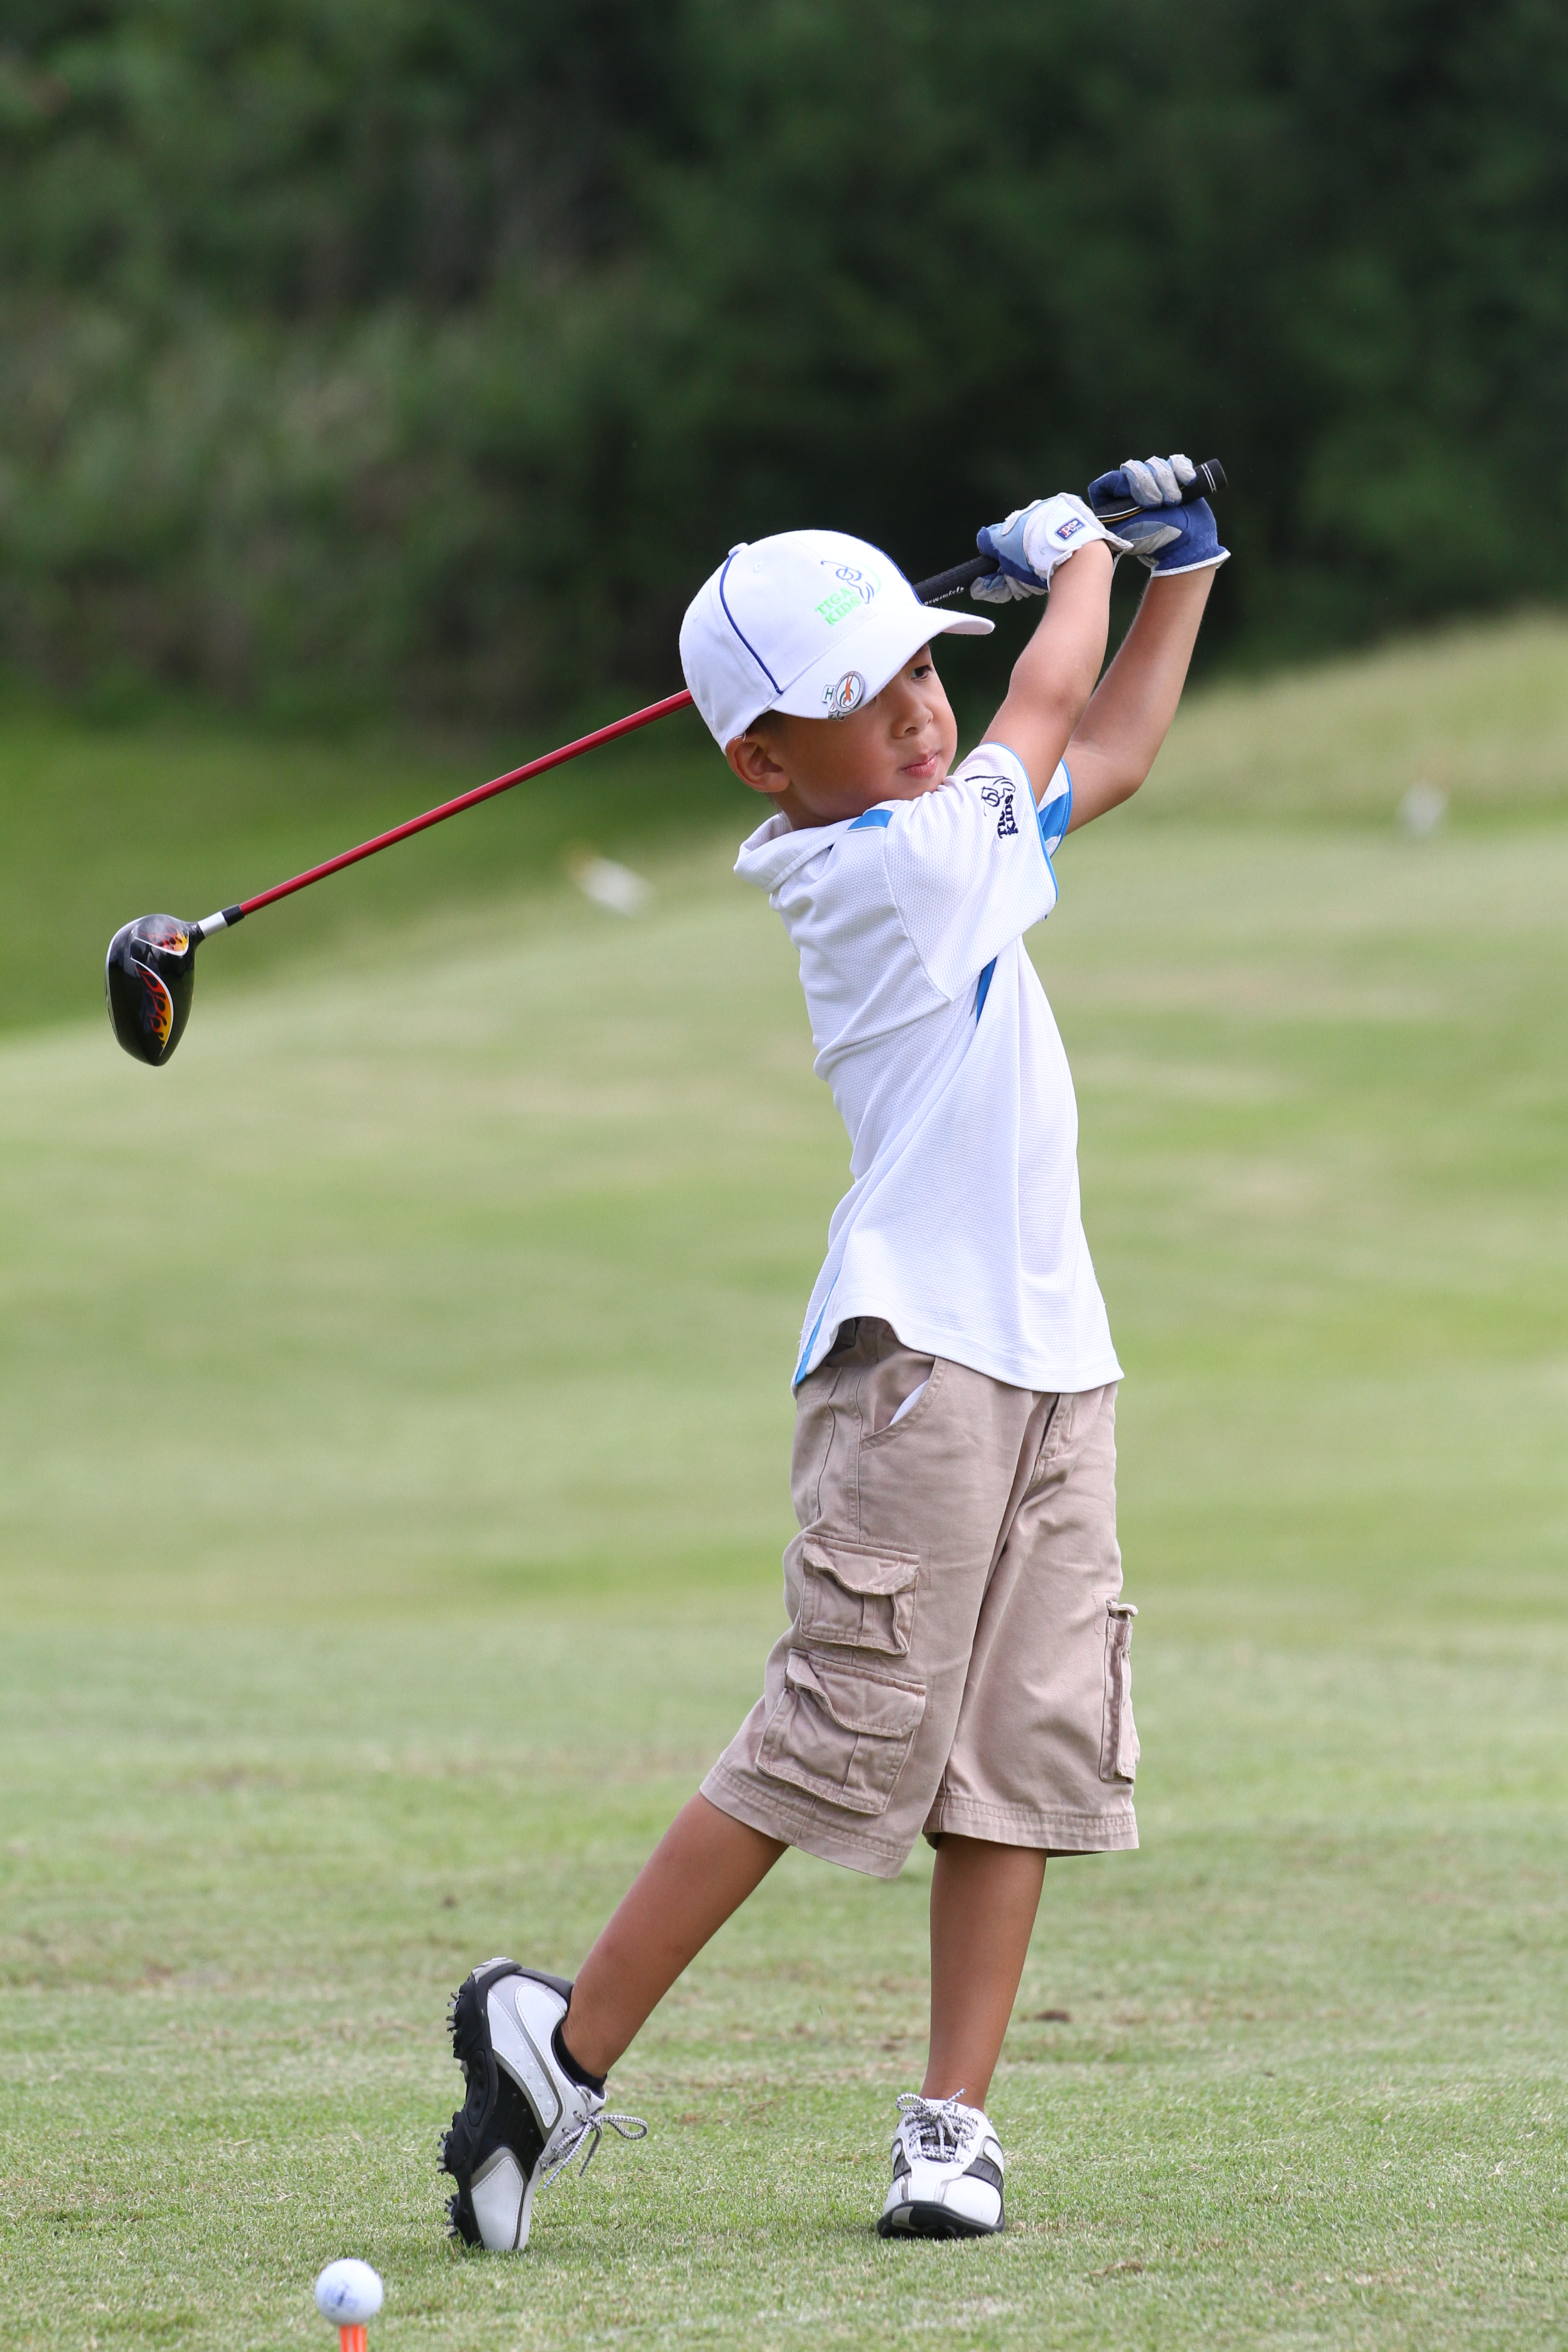 Joshua Chiu是台灣青少年公開賽年紀最小參賽球員